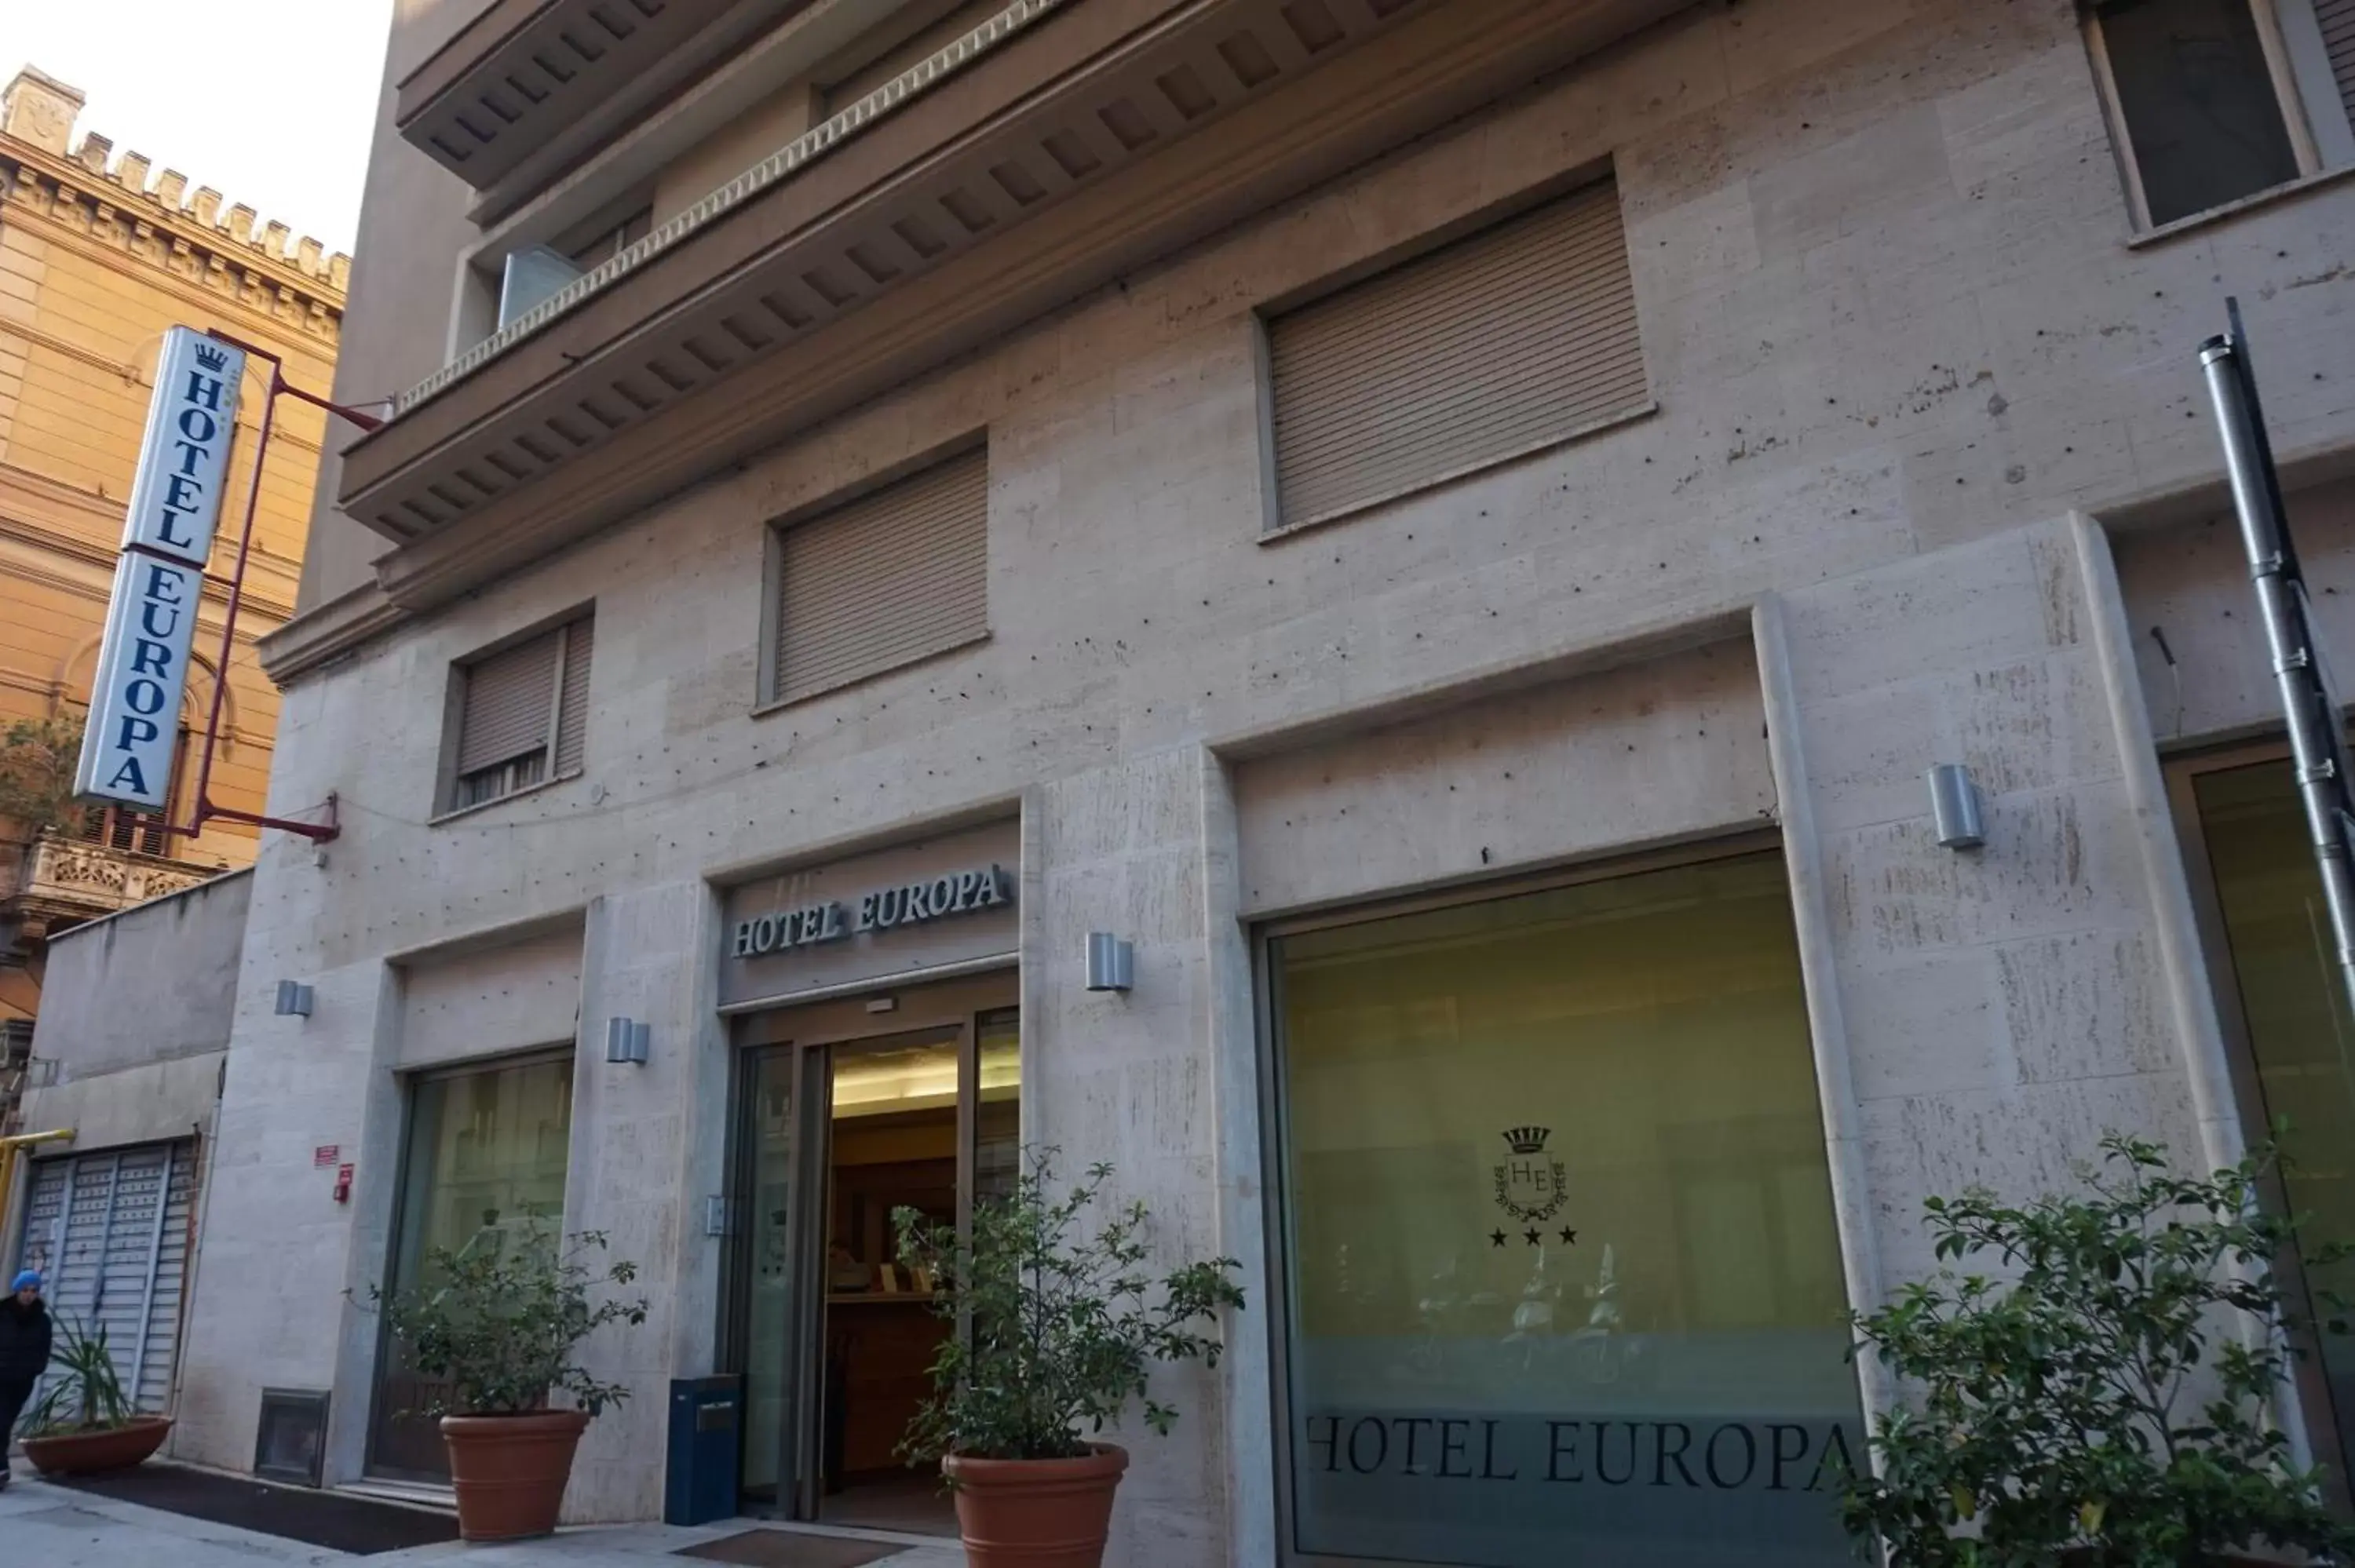 Facade/entrance, Property Building in Hotel Europa